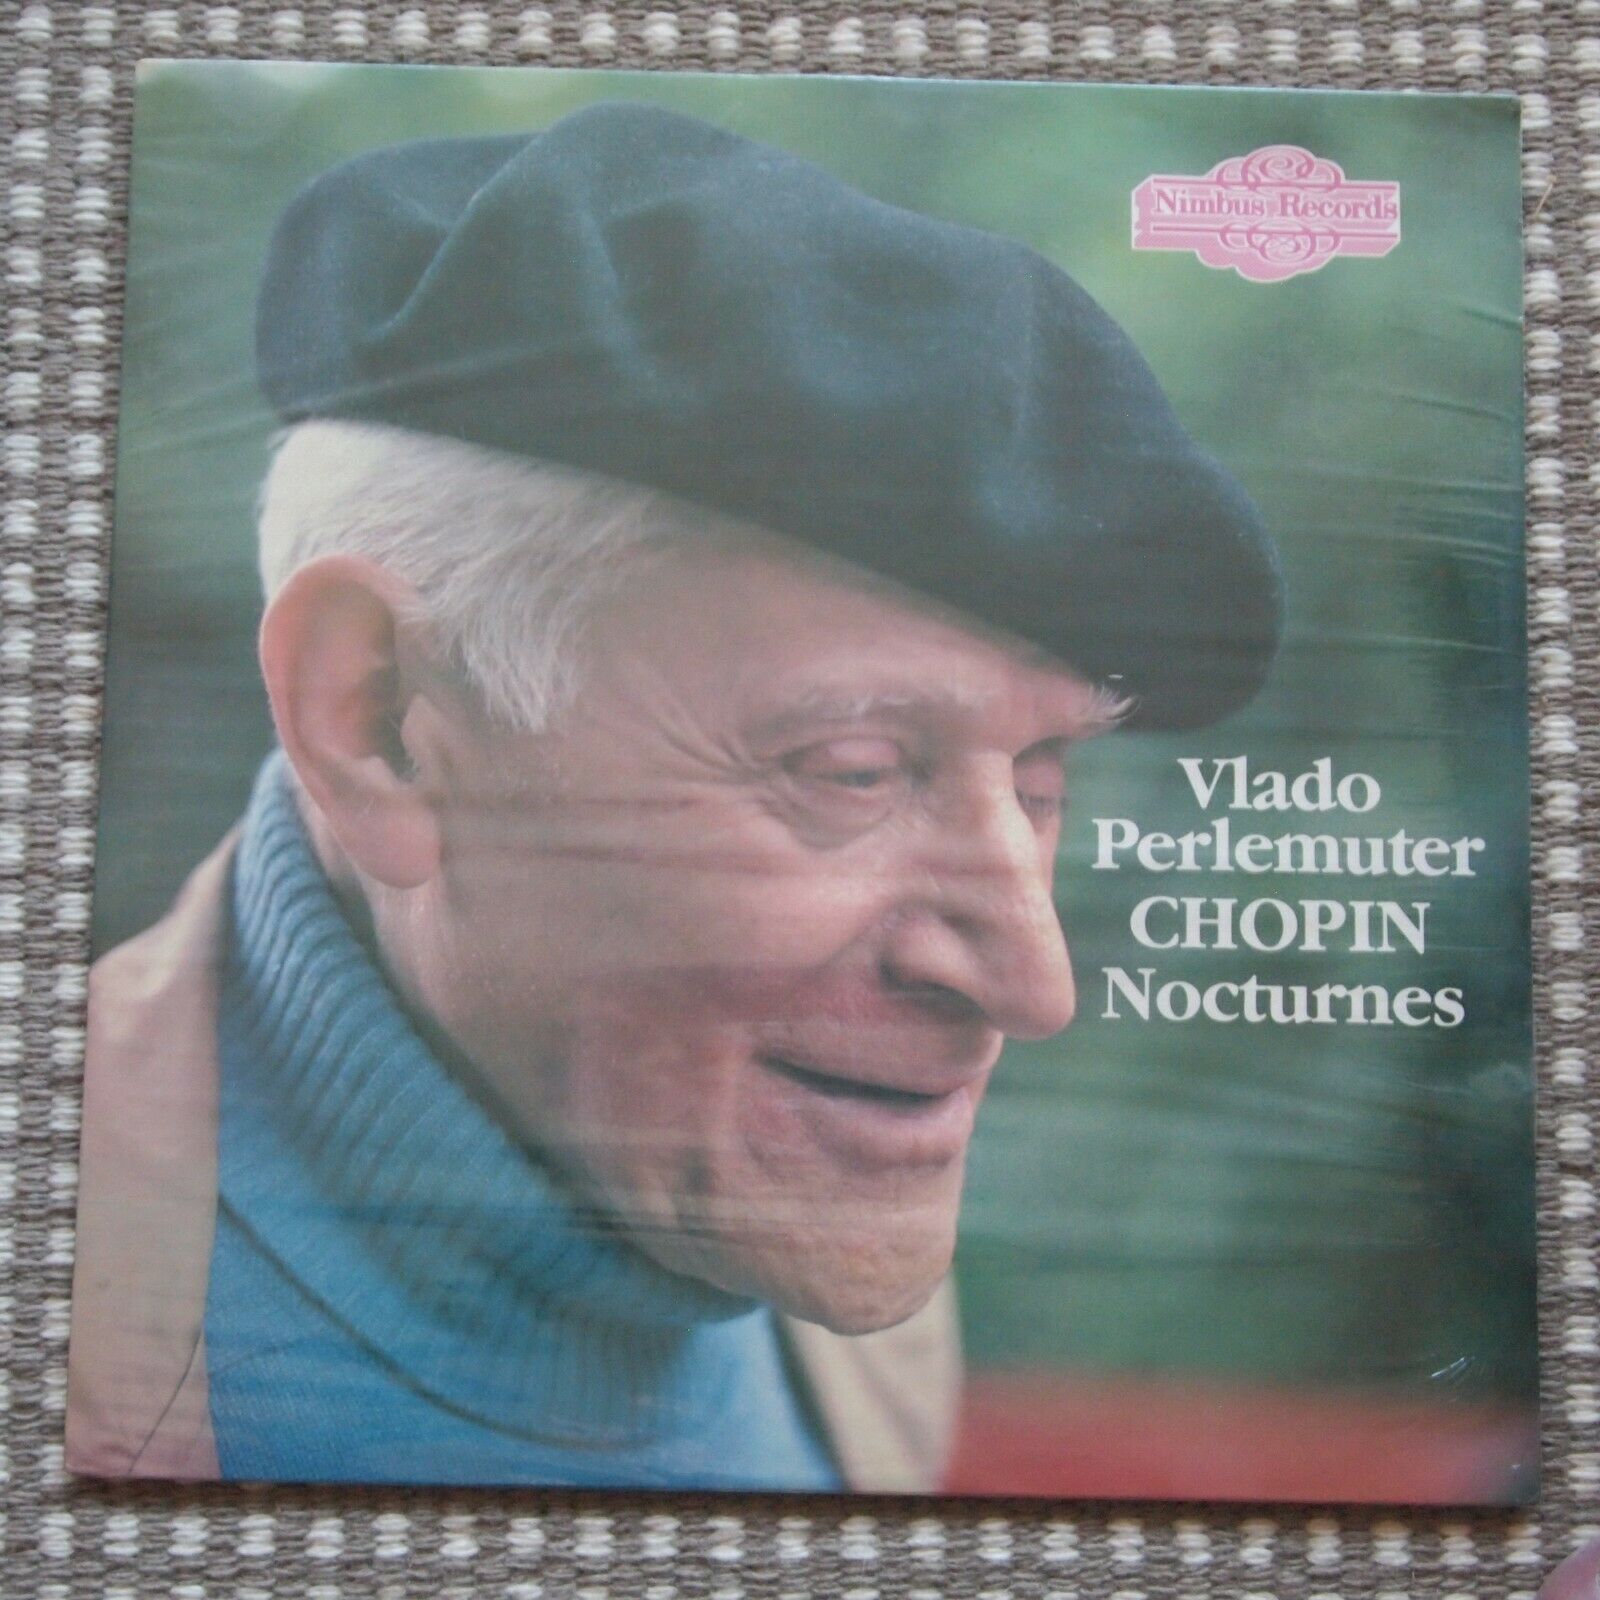 AUDIOPHILE Vlado Perlemuter Chopin Nocturnes Nimbus Records Digital SEALED